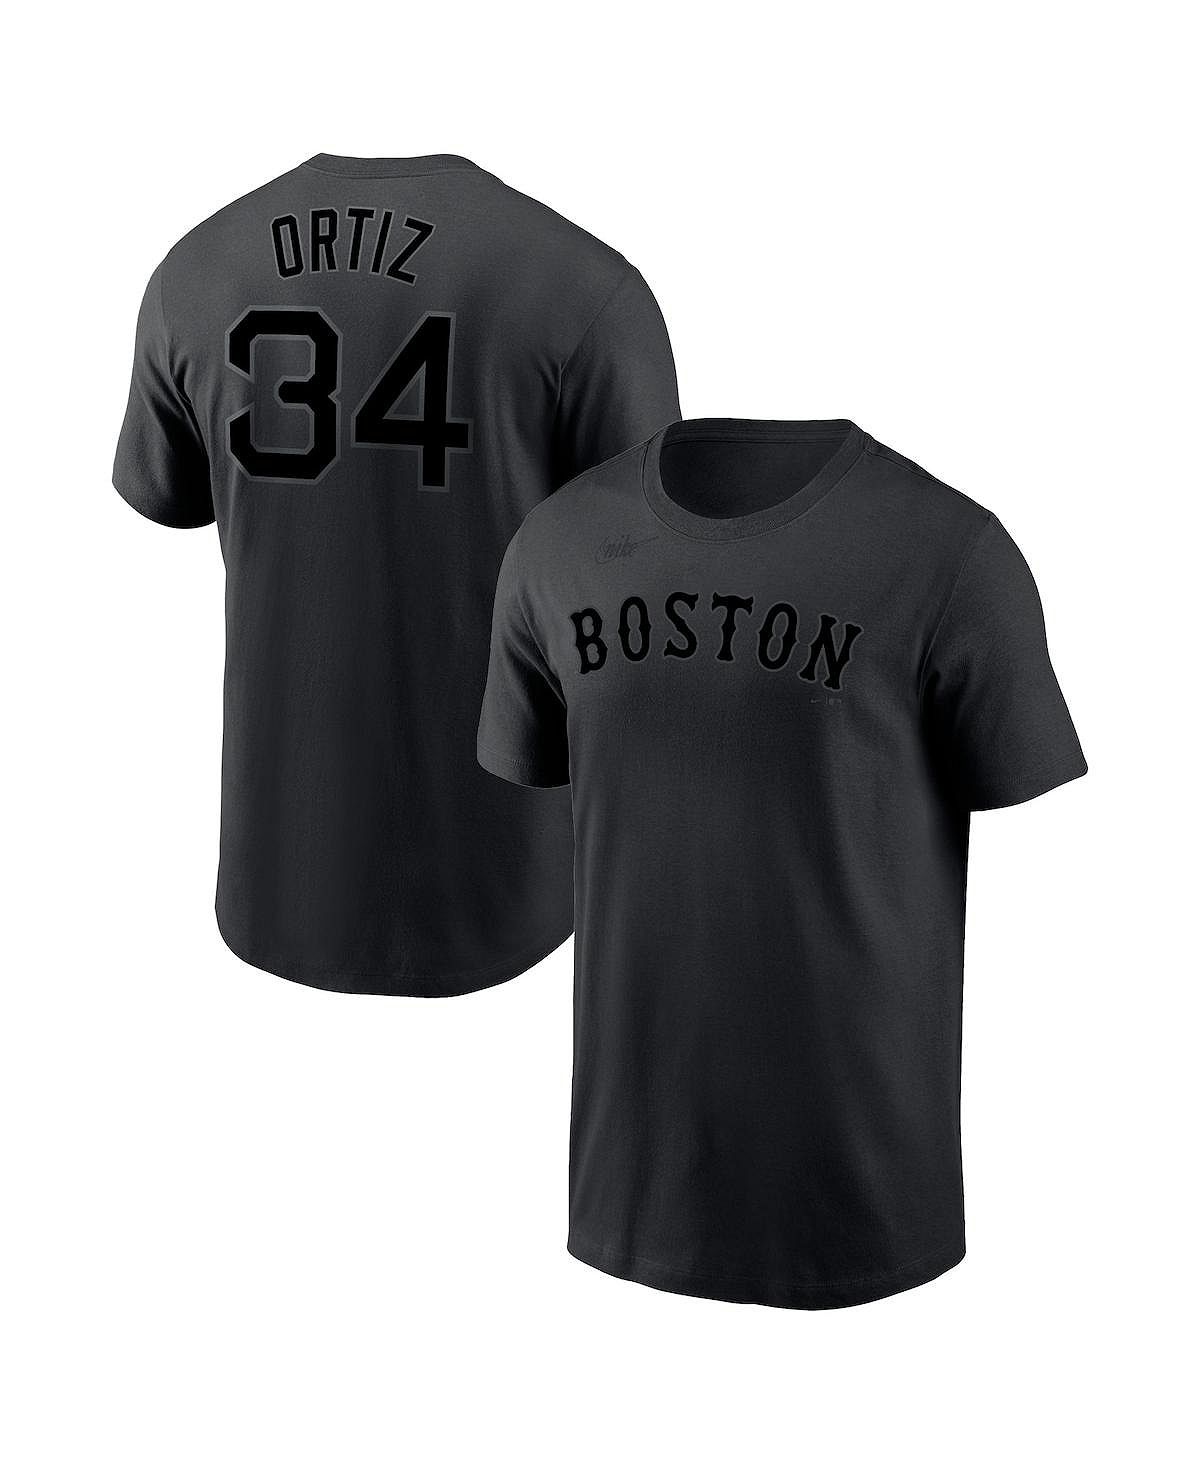 Мужская футболка david ortiz black boston red sox с именем и номером Nike, черный